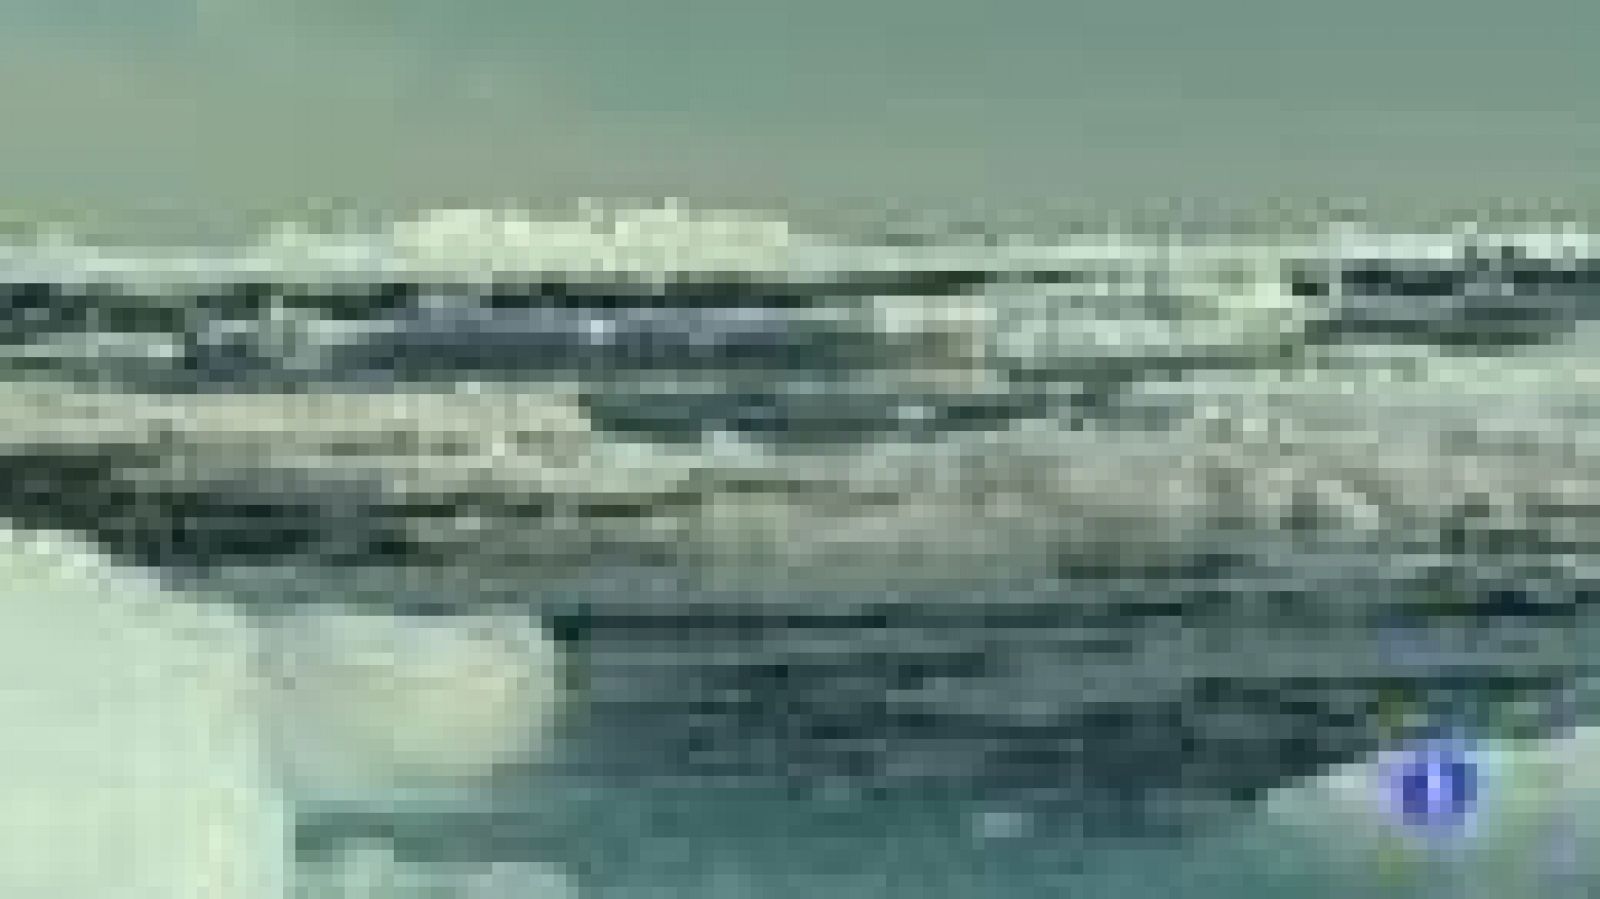 El hielo que cubre la superficie de Groenlandia desapareció casi por completo durante varios días de este mes, como demuestran las imágenes aportadas por varios satélites. Es la primera vez que ocurre algo así desde hace tres décadas, cuando se iniciaron este tipo de observaciones.La NASA ha comunicado que el deshielo "se extendió rápidamente" y mientras el 8 de julio los satélites mostraban que afectaba a cerca del 40% de la superficie, solo cuatro días después se había derretido el 97% del hielo de la zona.El fenómeno se observó comparando fotografías de este mes con otras de la misma zona realizadas en años anteriores y afectó por igual a toda la isla, desde las capas más finas de la costa hasta las del interior, donde el hielo alcanza dos kilómetros de profundidad.